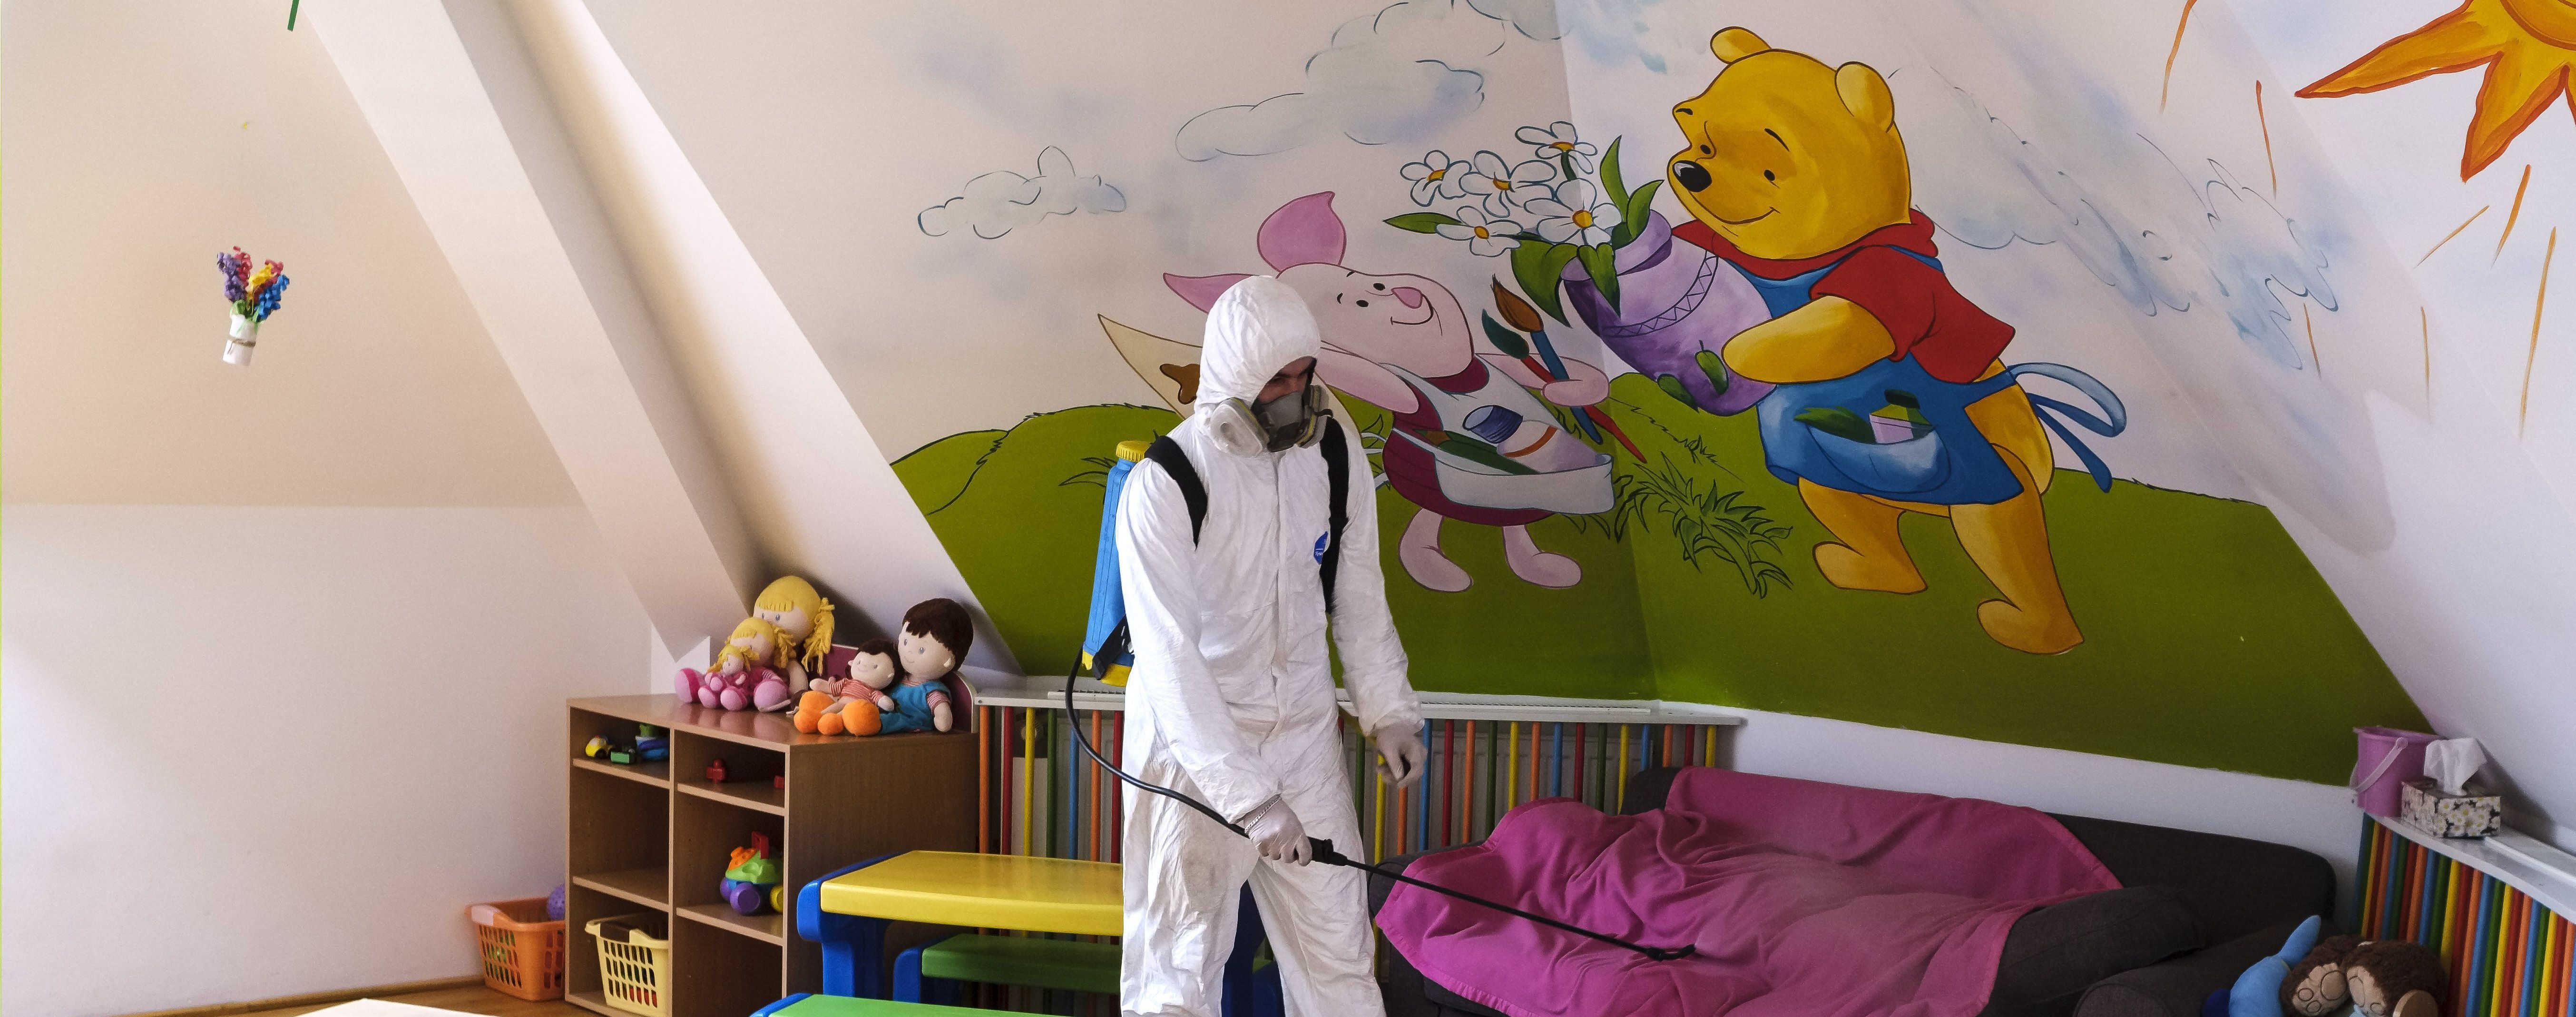 У Тернополі закривають дитячий садок через спалах коронавірусу